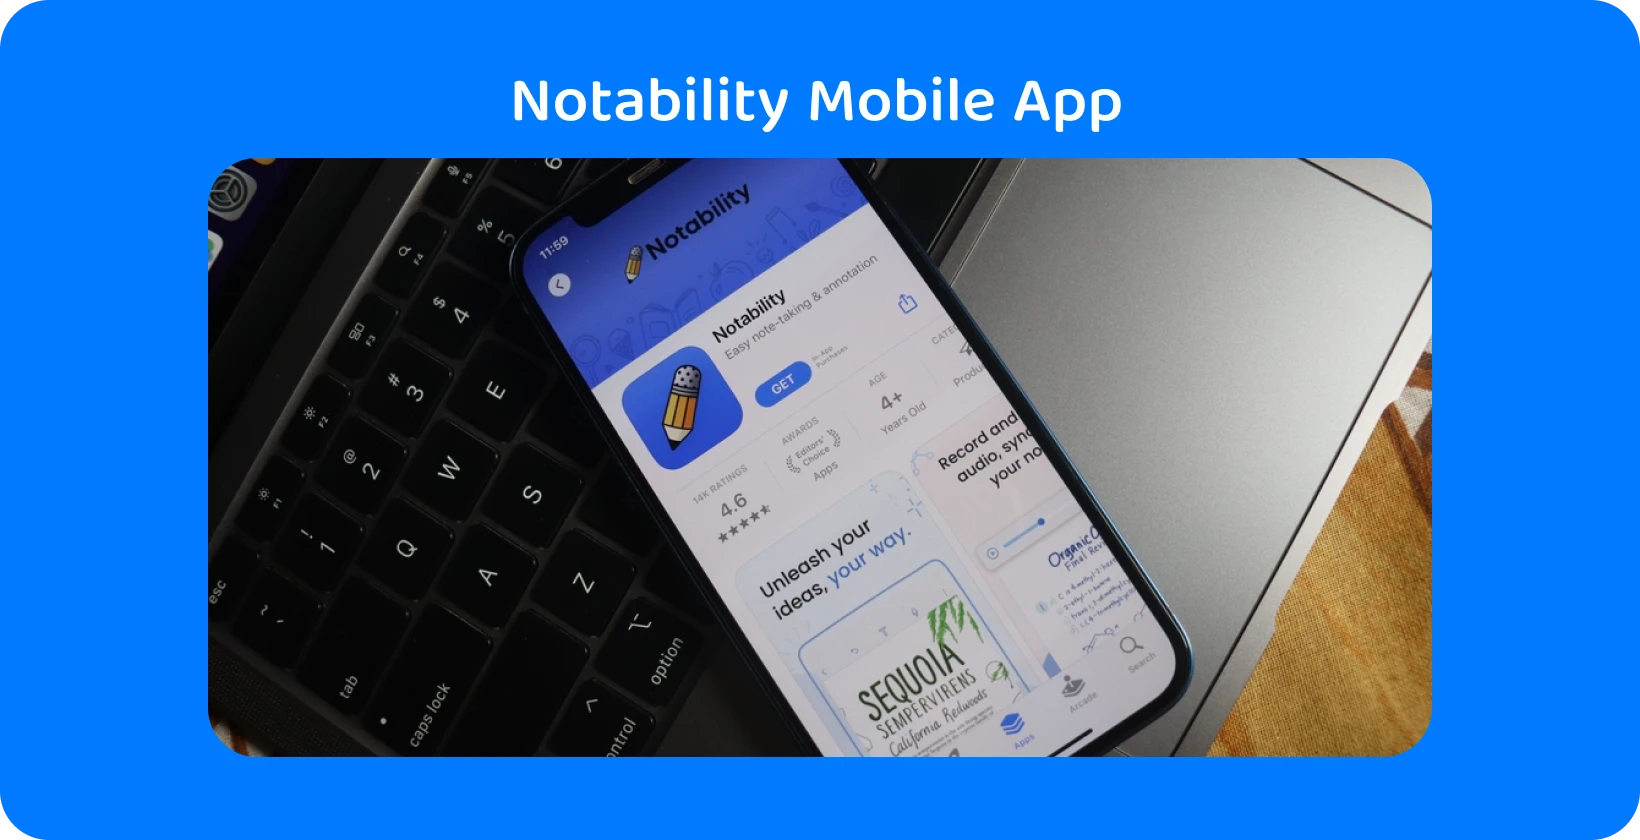 Notability app op het smartphonescherm met transcriptiefunctie, met audio-naar-tekstmogelijkheden.